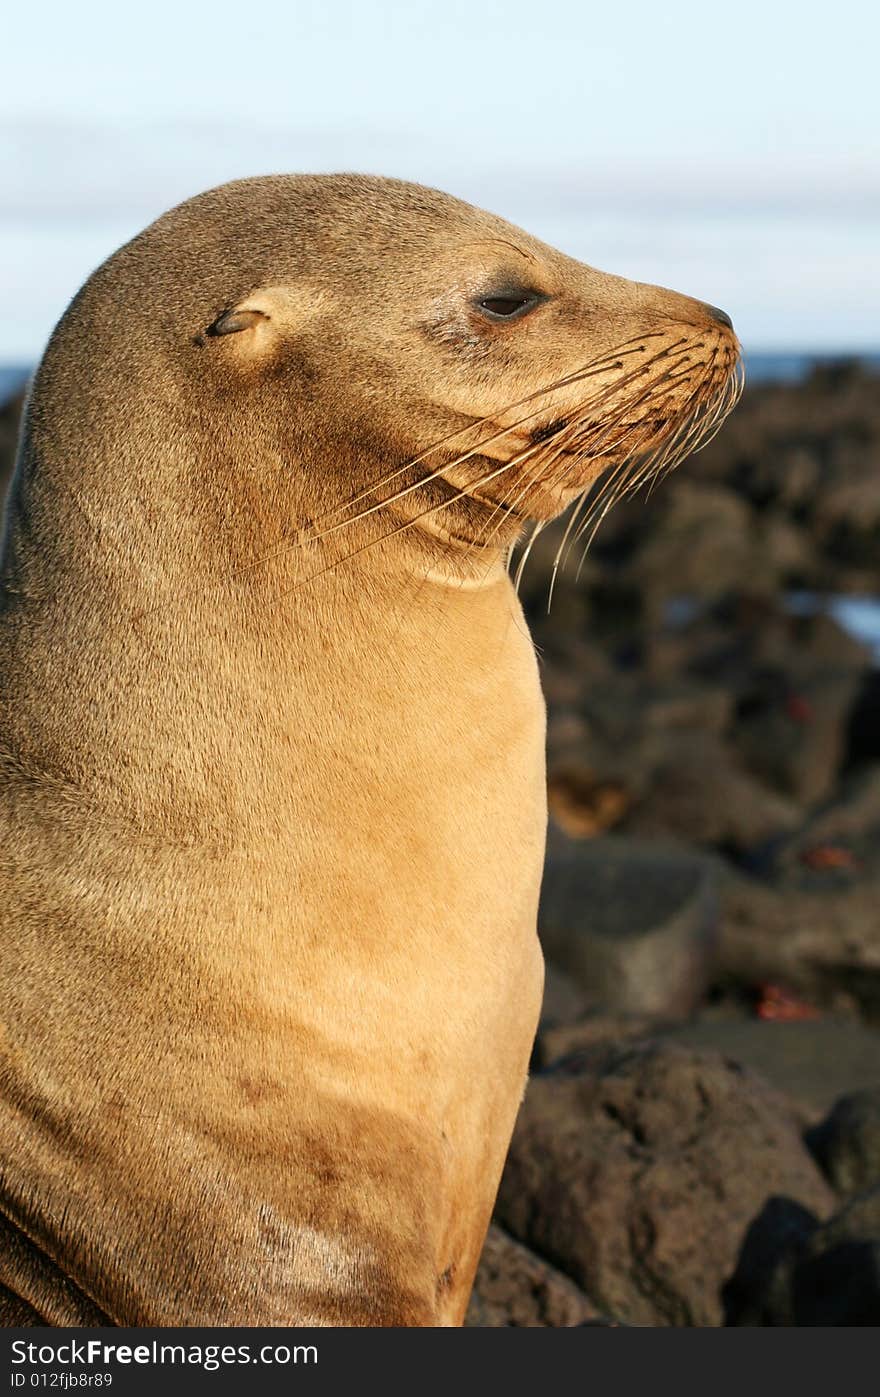 A Sea Lion in Profile